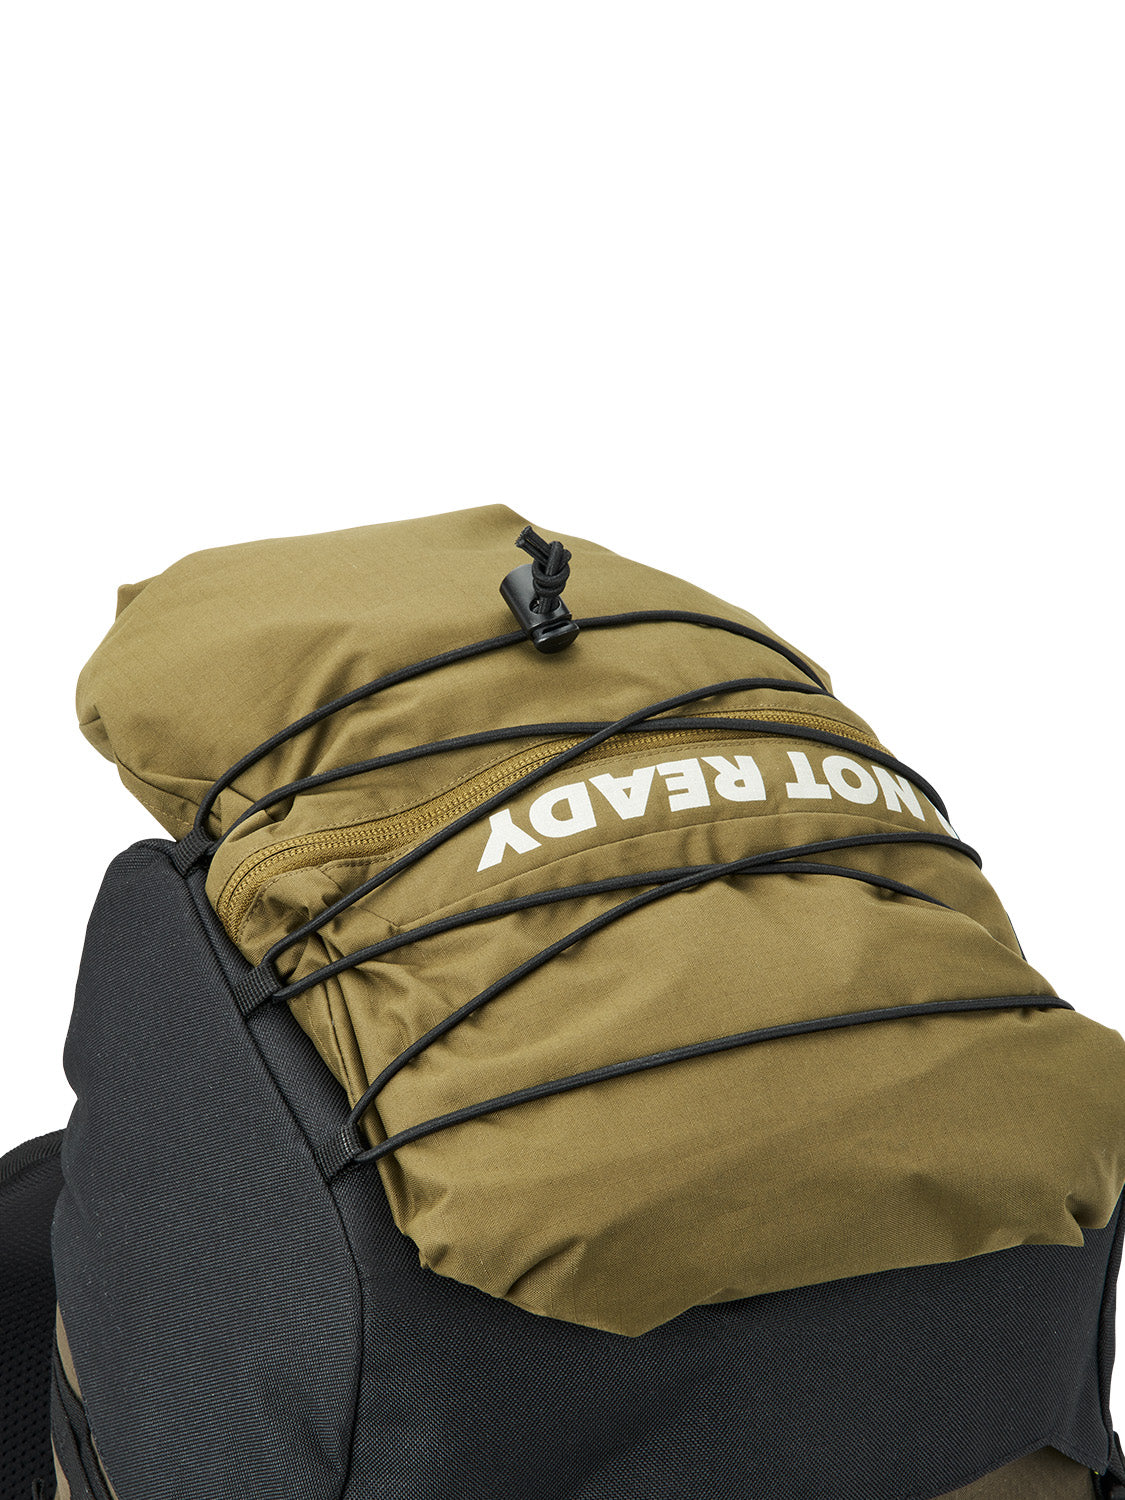 AEVOR-backpack-Explore-Pack-Proof-Olive-Gold-detail